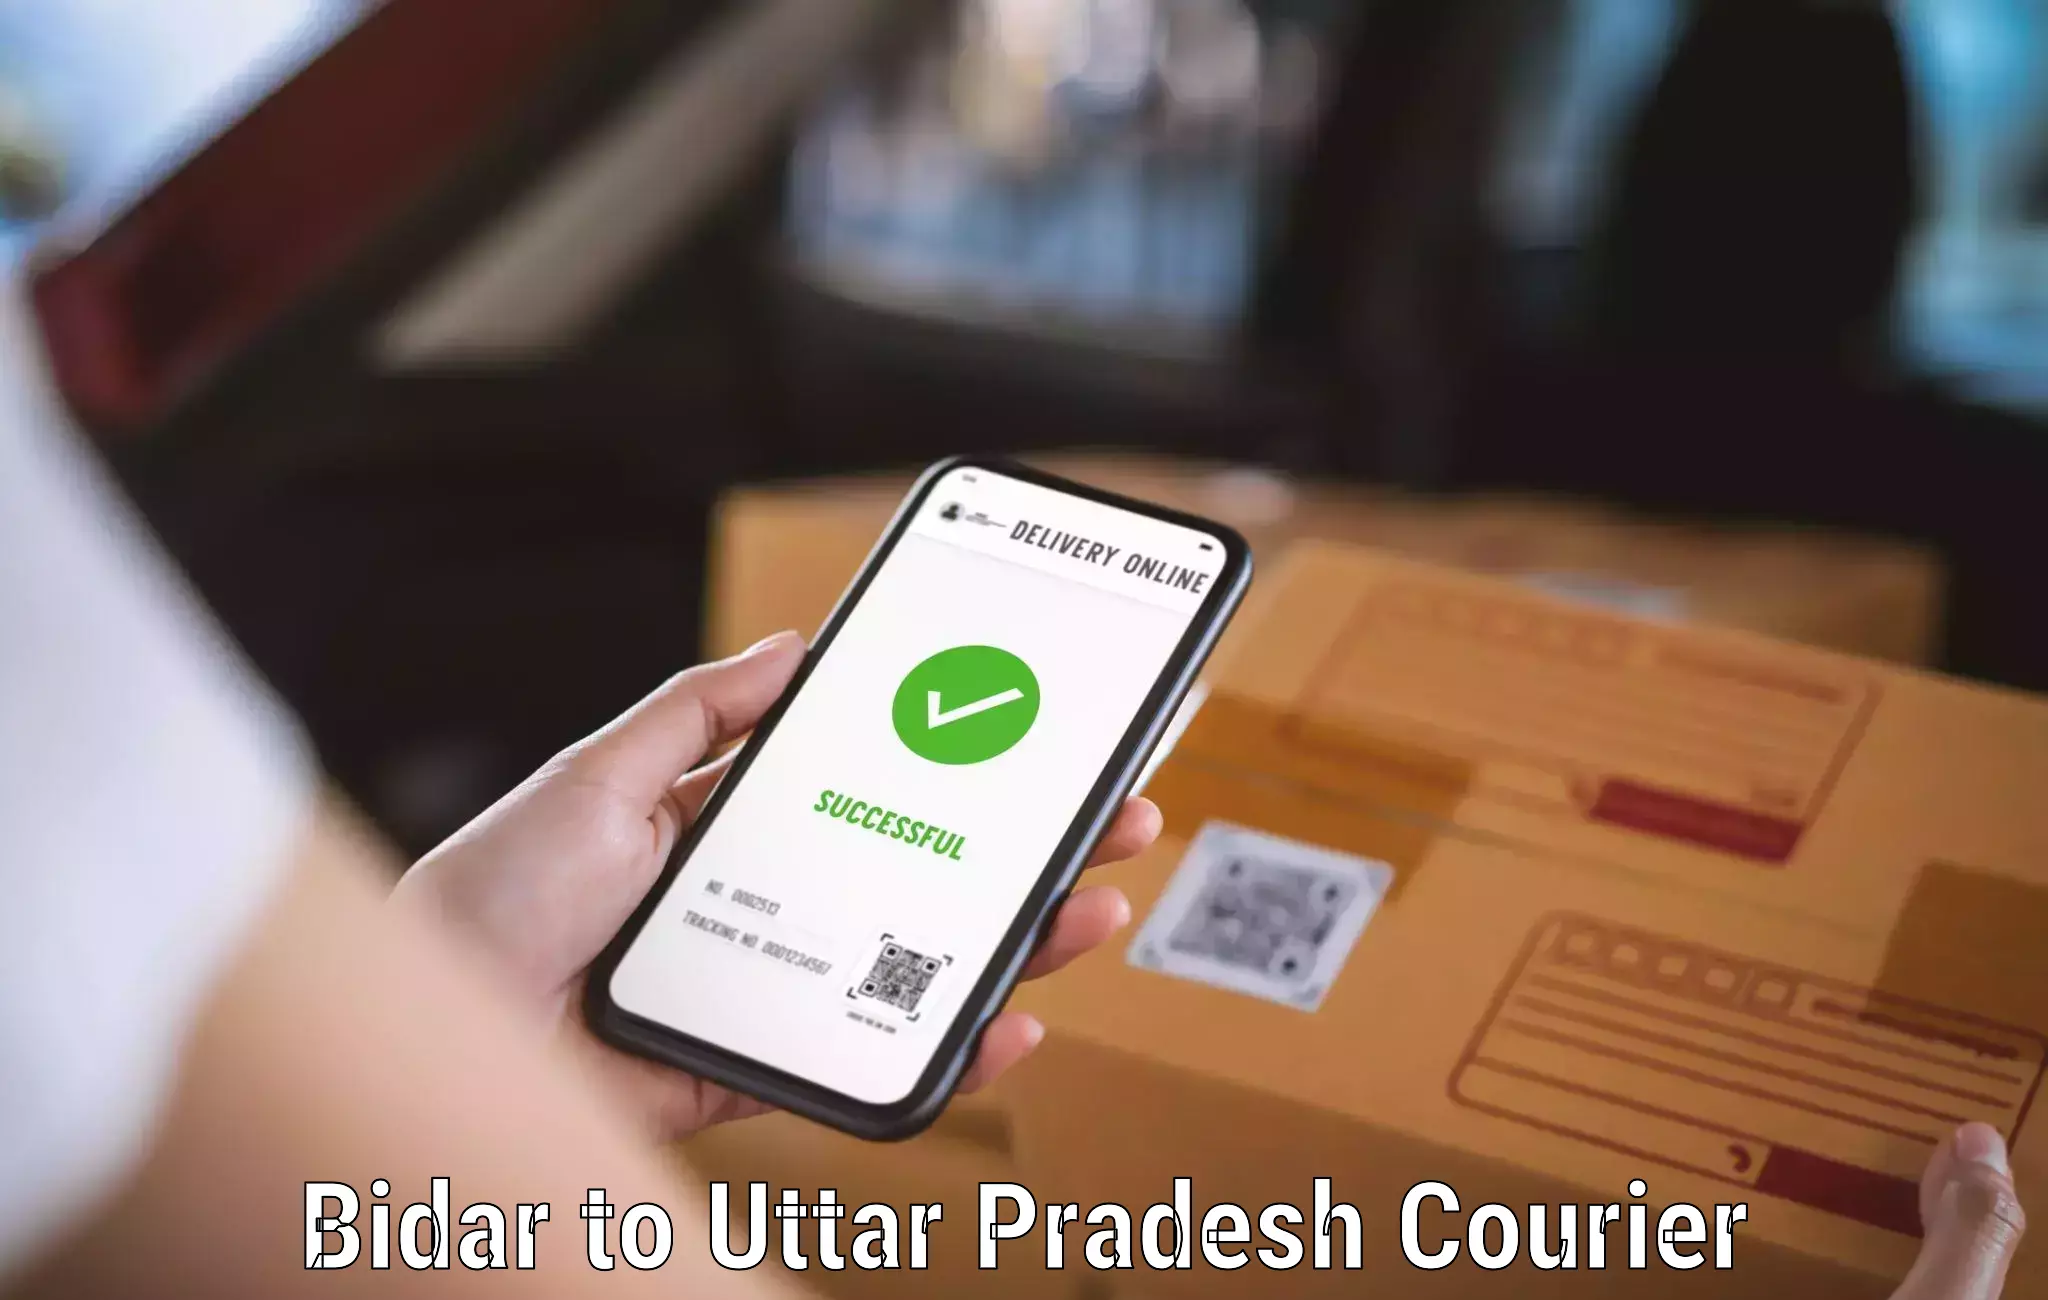 User-friendly delivery service Bidar to Afzalgarh